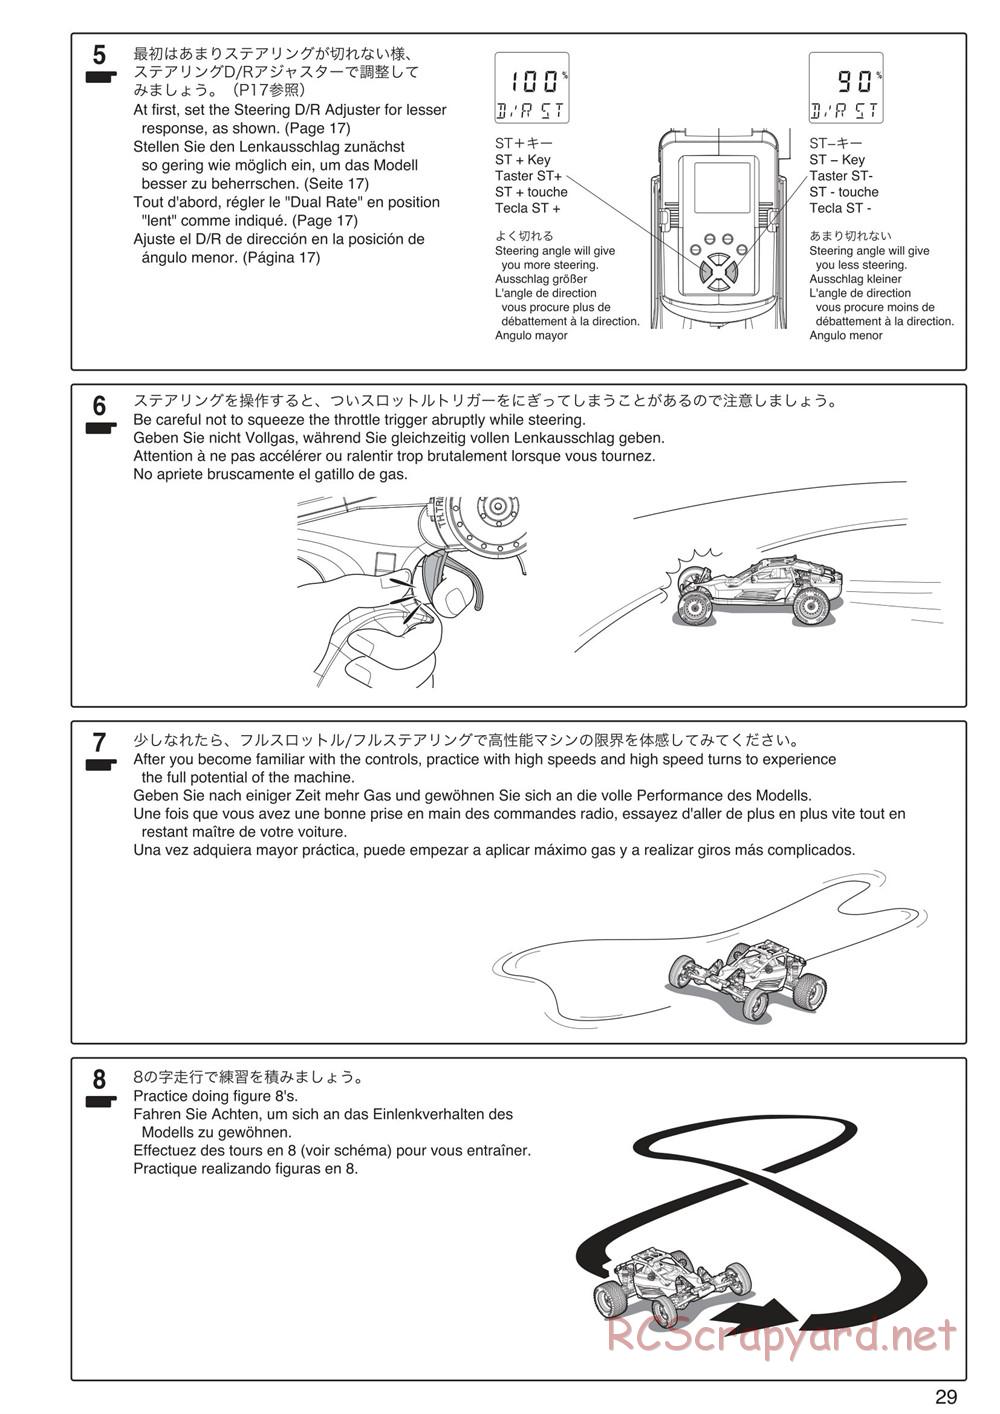 Kyosho - Scorpion XXL VE - Manual - Page 29